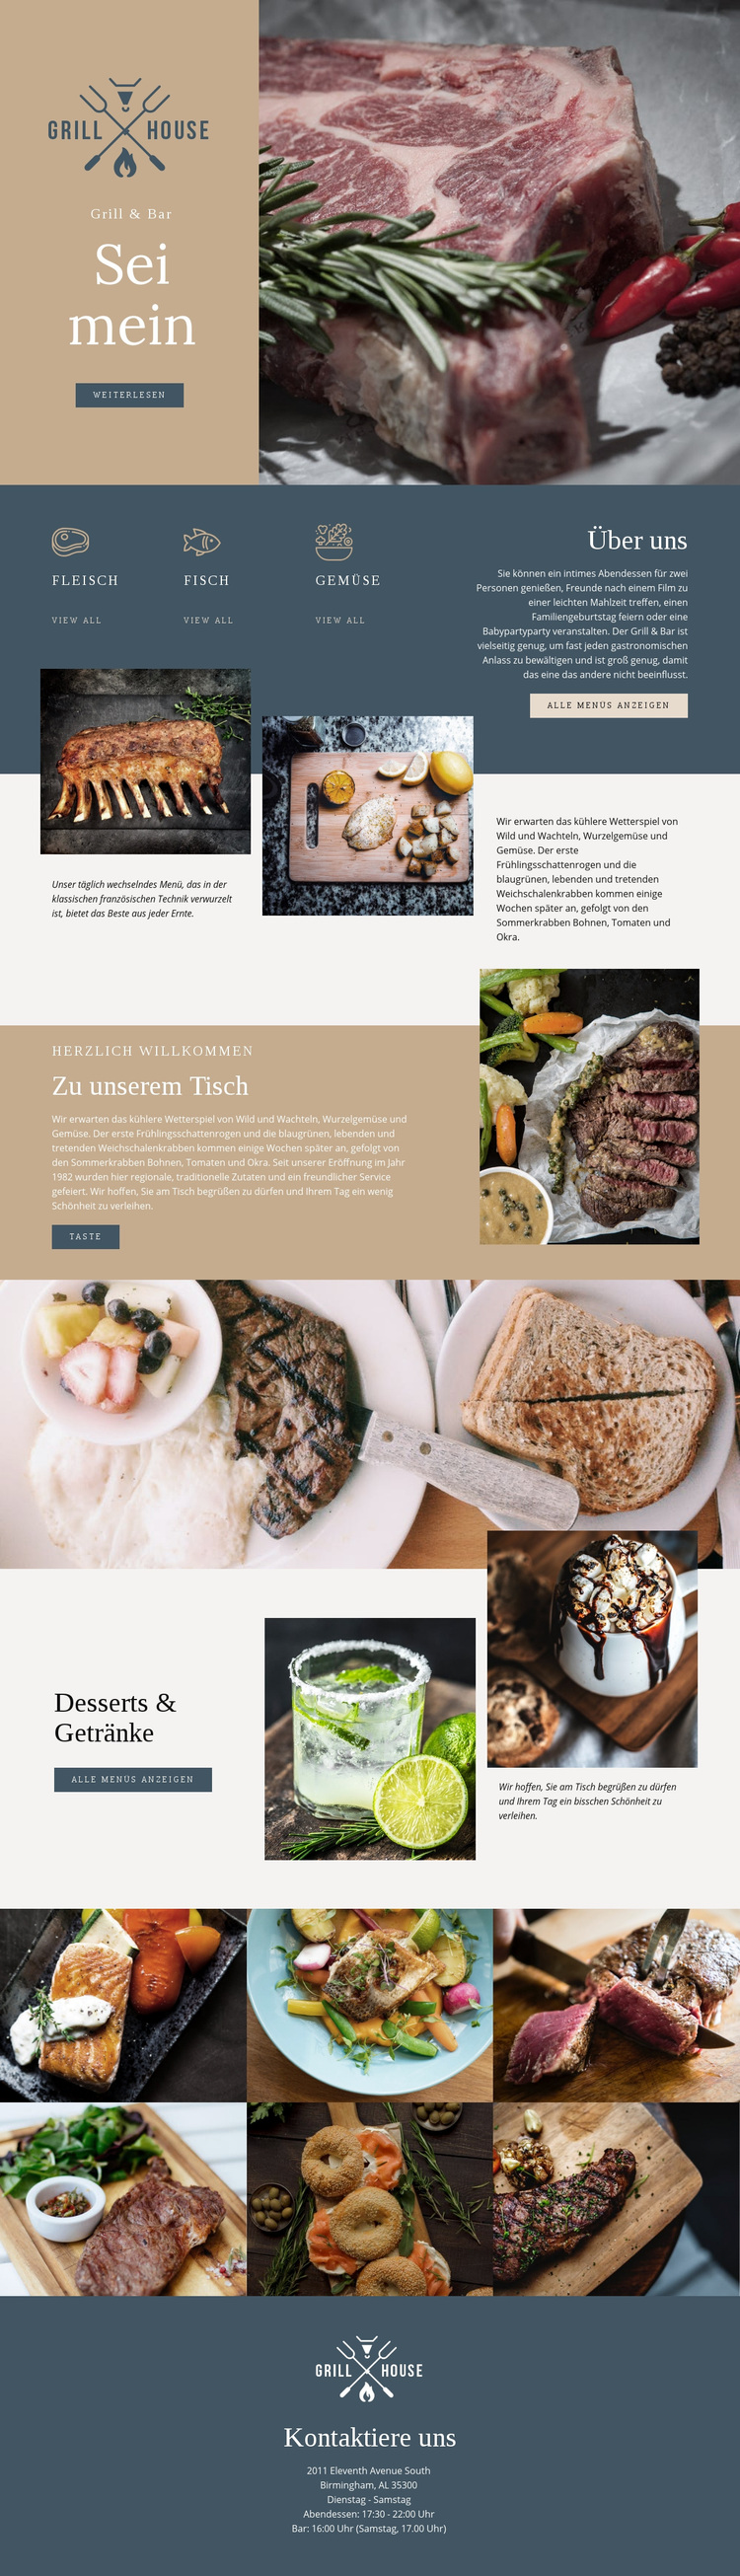 Feinstes Grillhaus Restaurant WordPress-Theme